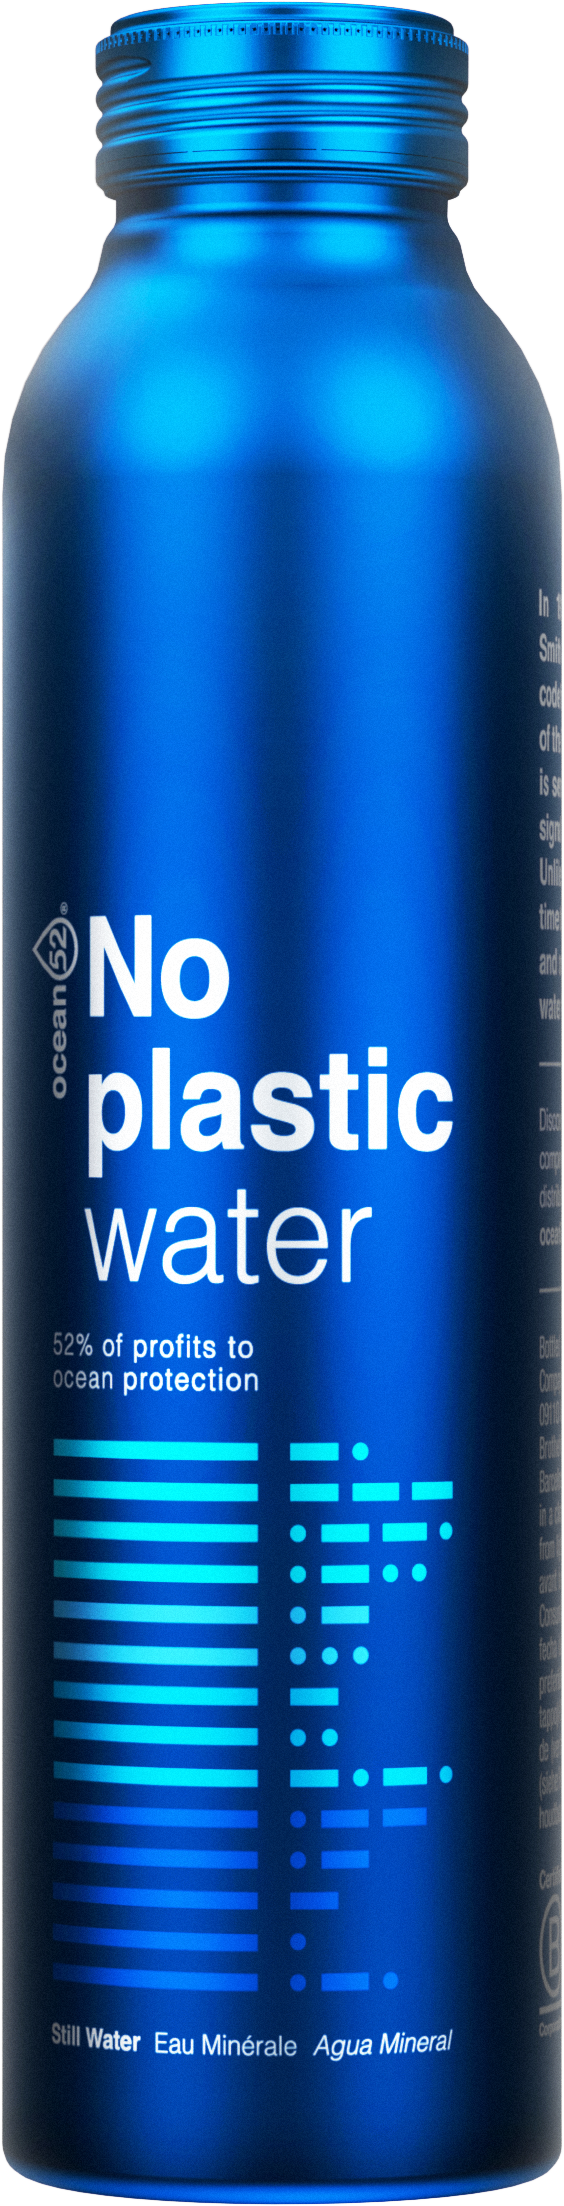 No plastic water 2 copy.png